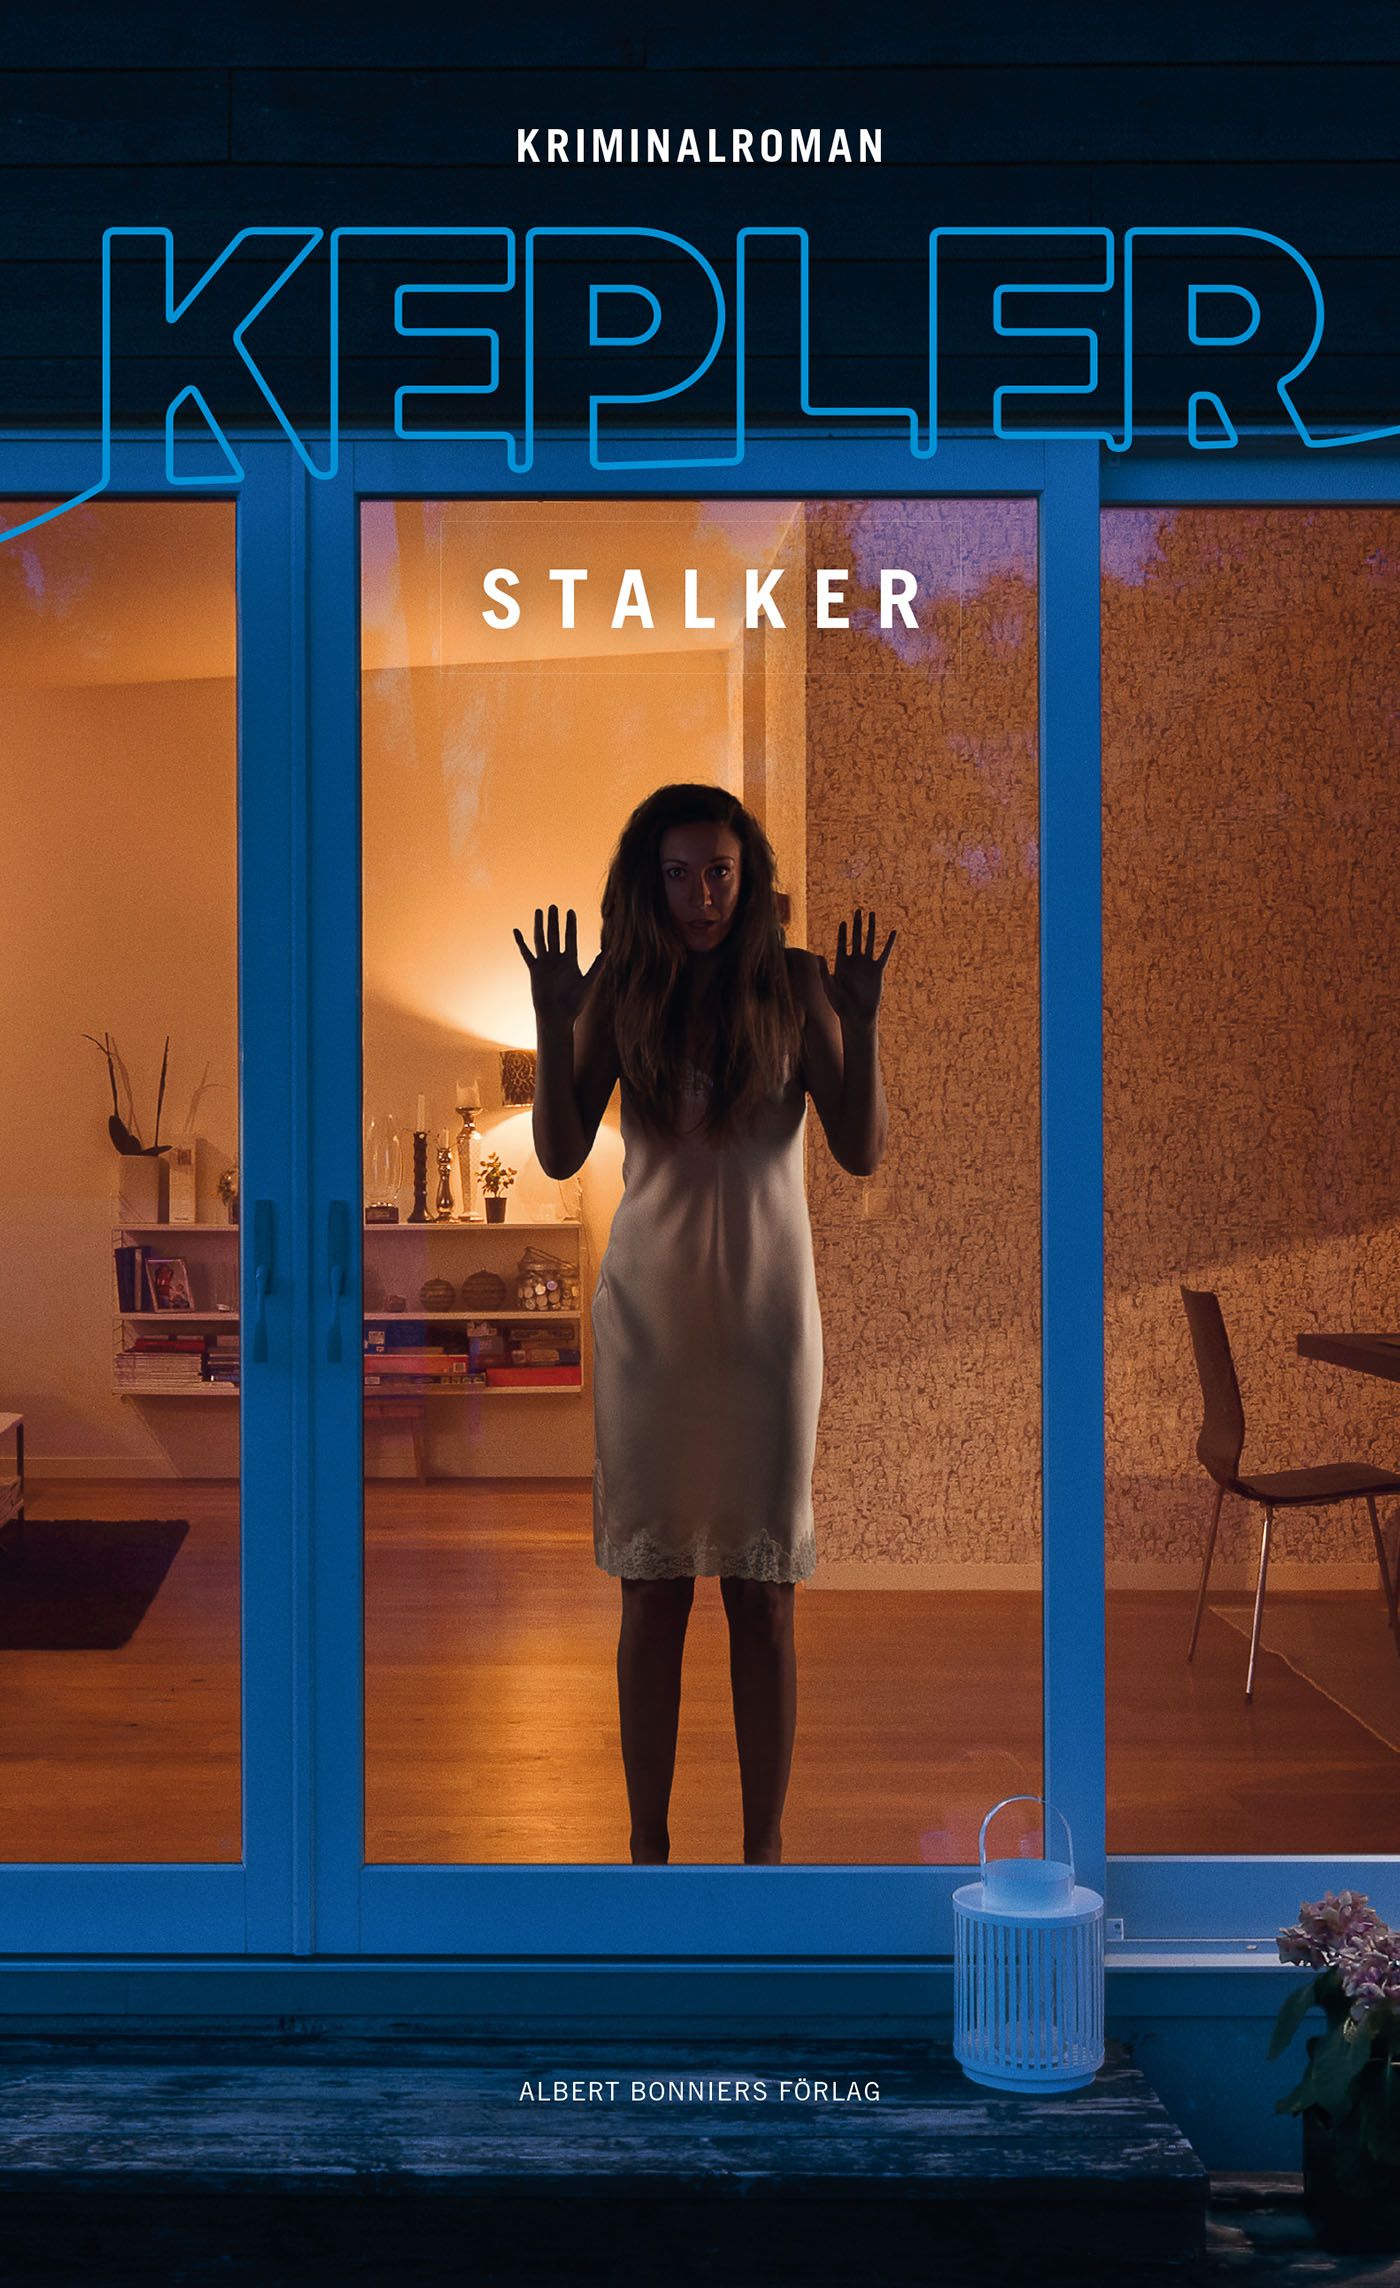 Stalker, eBook by Lars Kepler